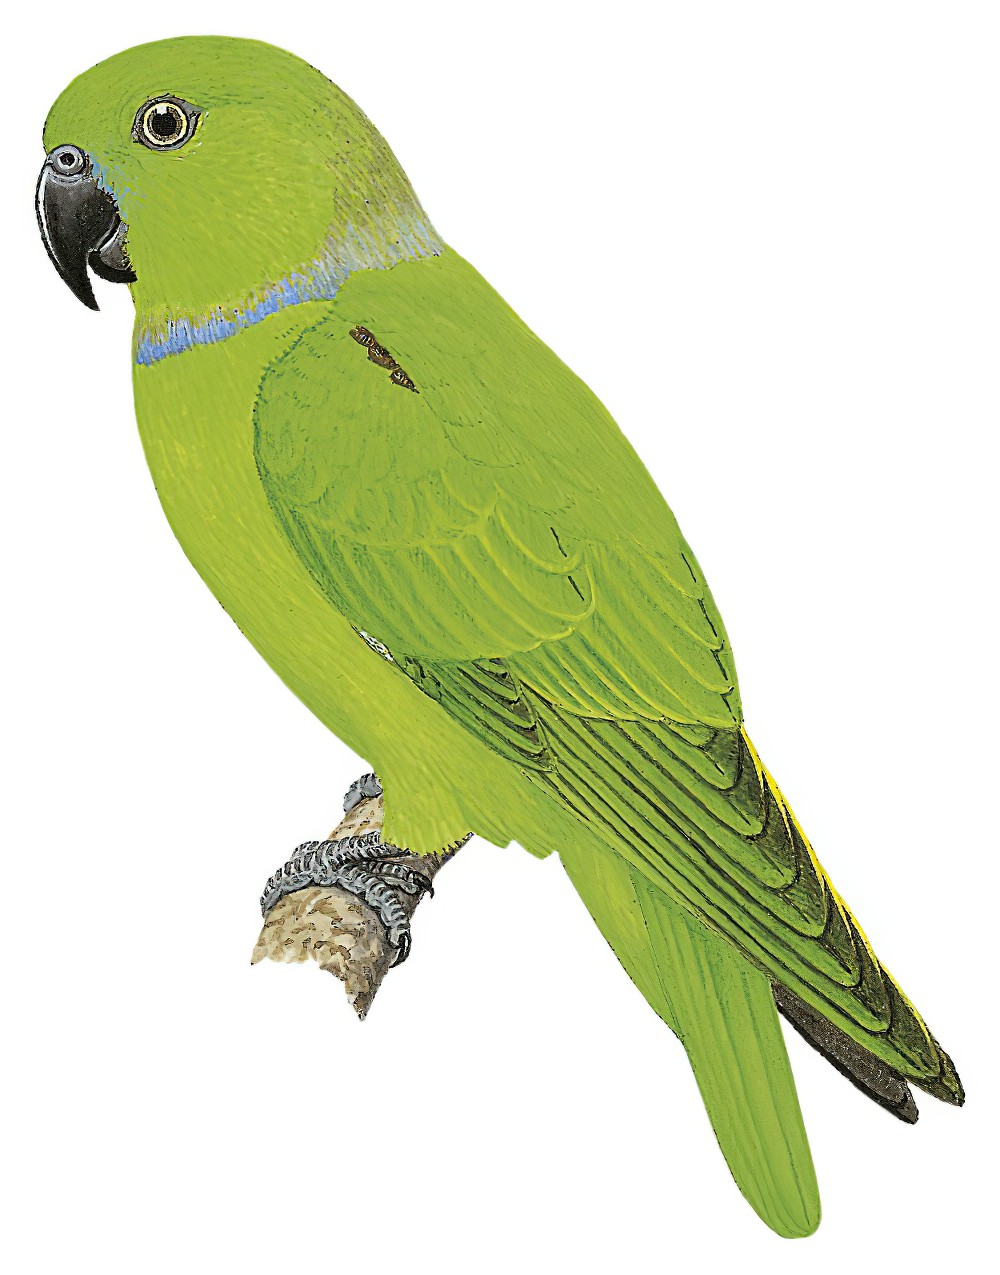 蓝领鹦鹉 / Blue-collared Parrot / Geoffroyus simplex